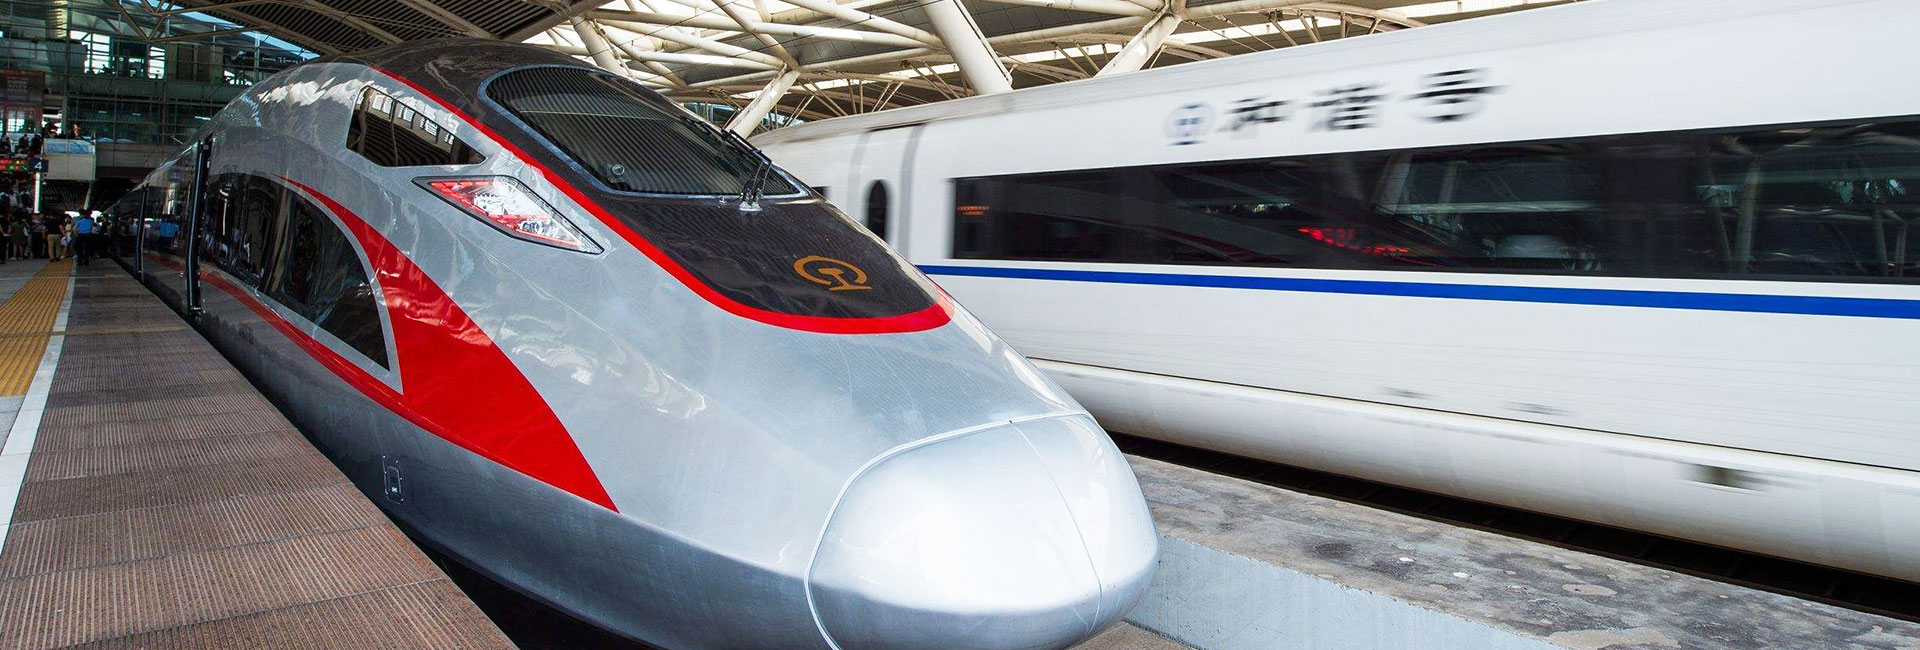 6 Days Hong Kong Beijing High Speed Train Experience Tour